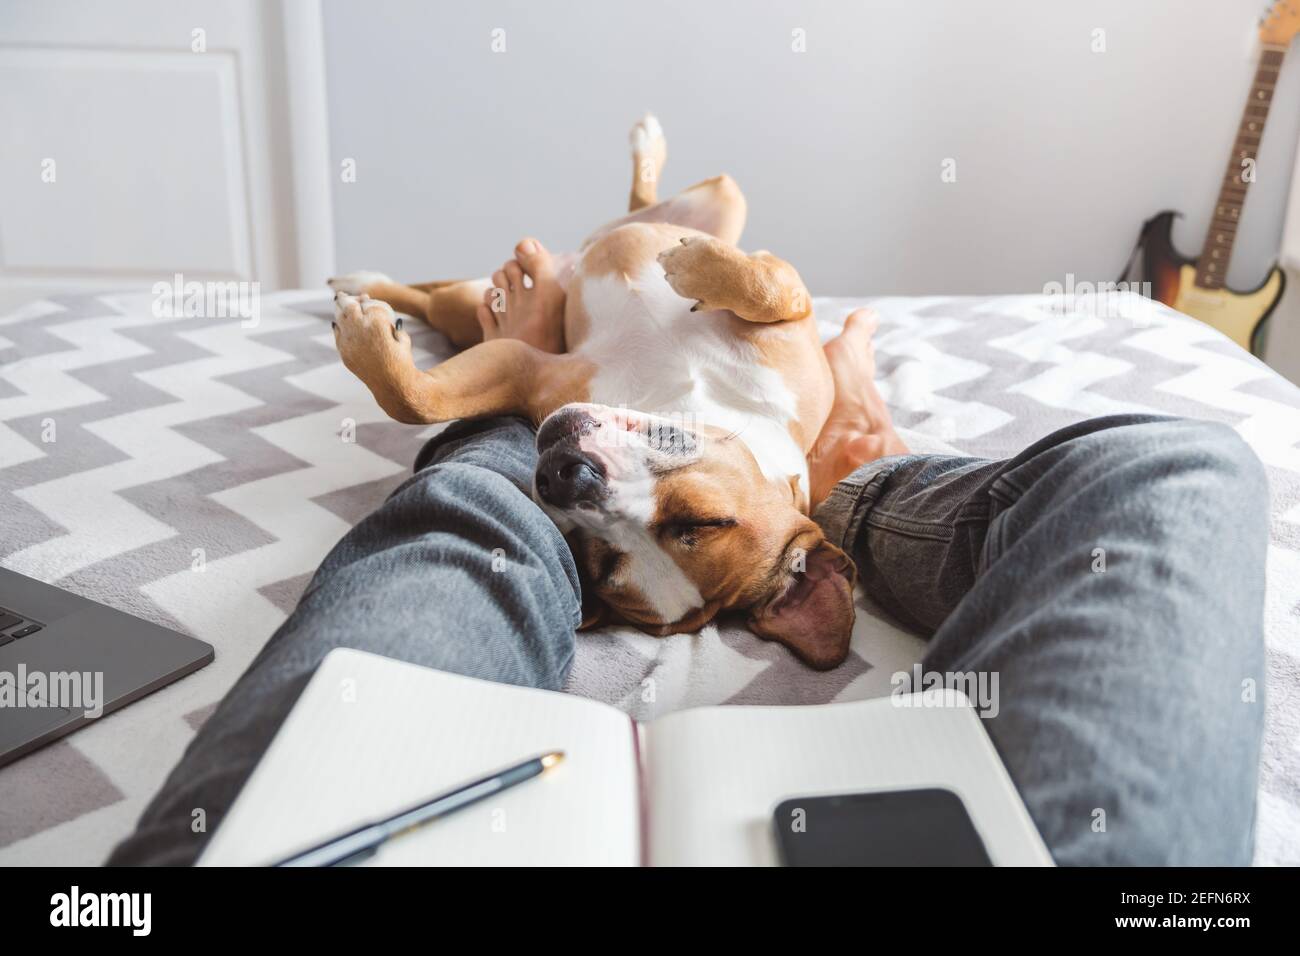 travail à domicile, vie domestique avec des chiens Banque D'Images